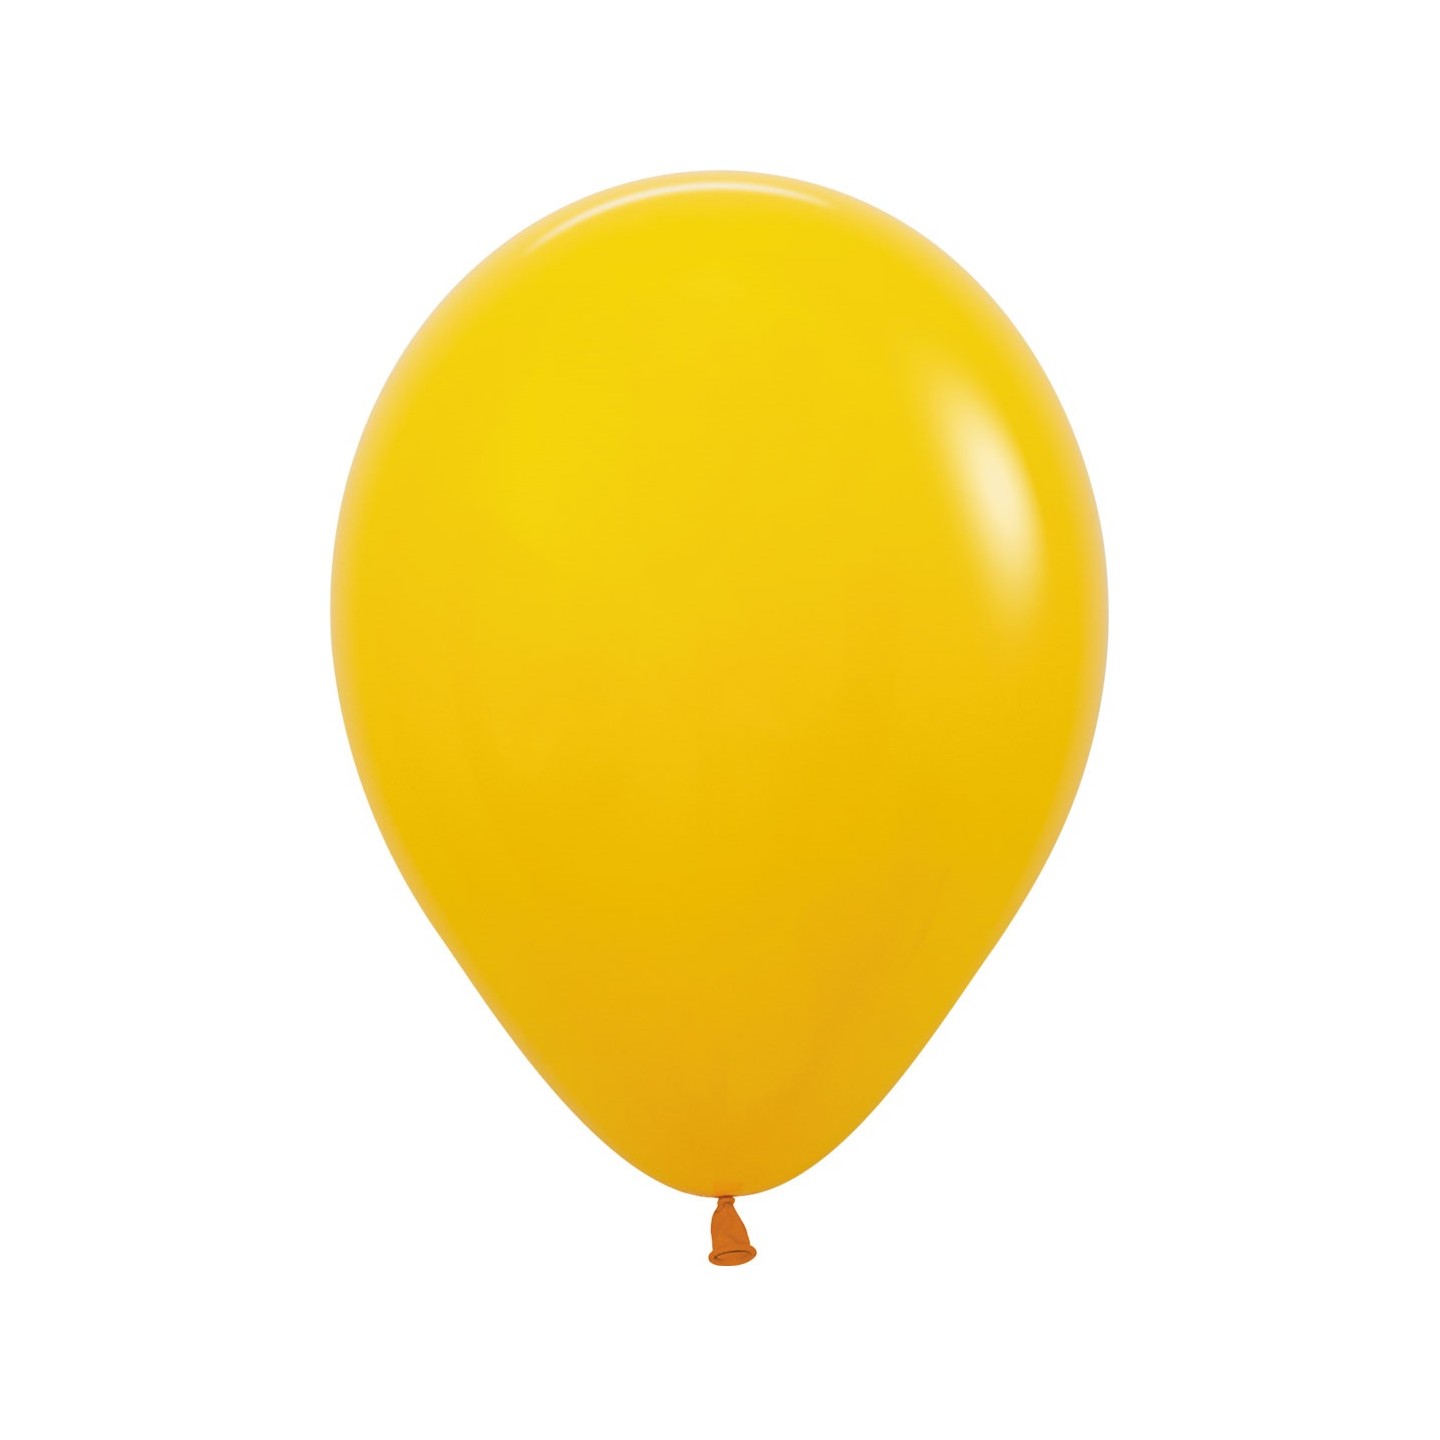 sempertex ballonnen honing geel honey yellow